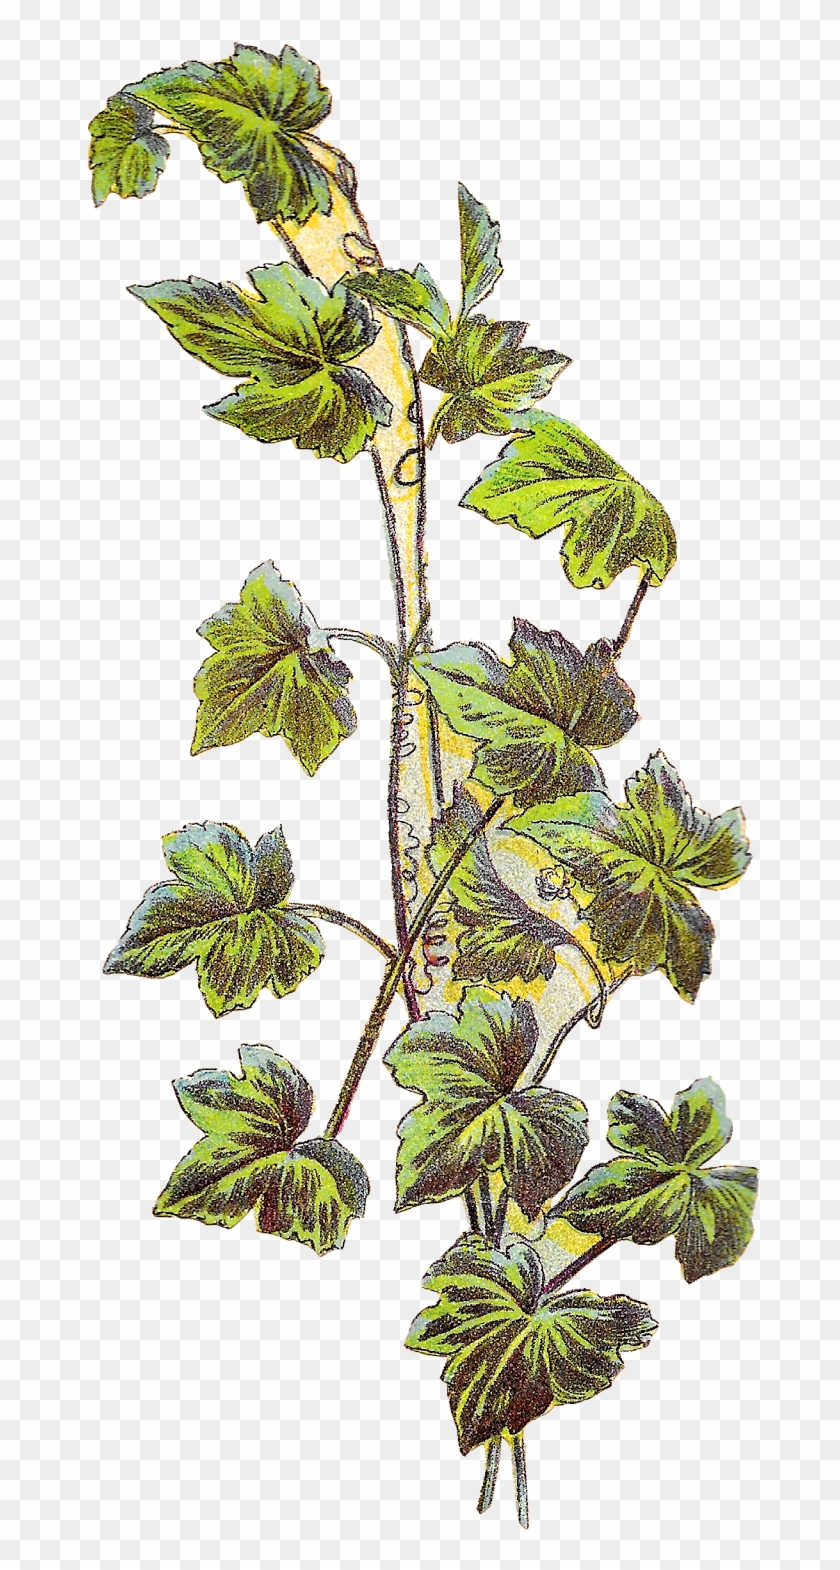 I Can Image This Grape Vine Image On Handmade Jar Labels - Illustration Grape Vine Botanical #763386